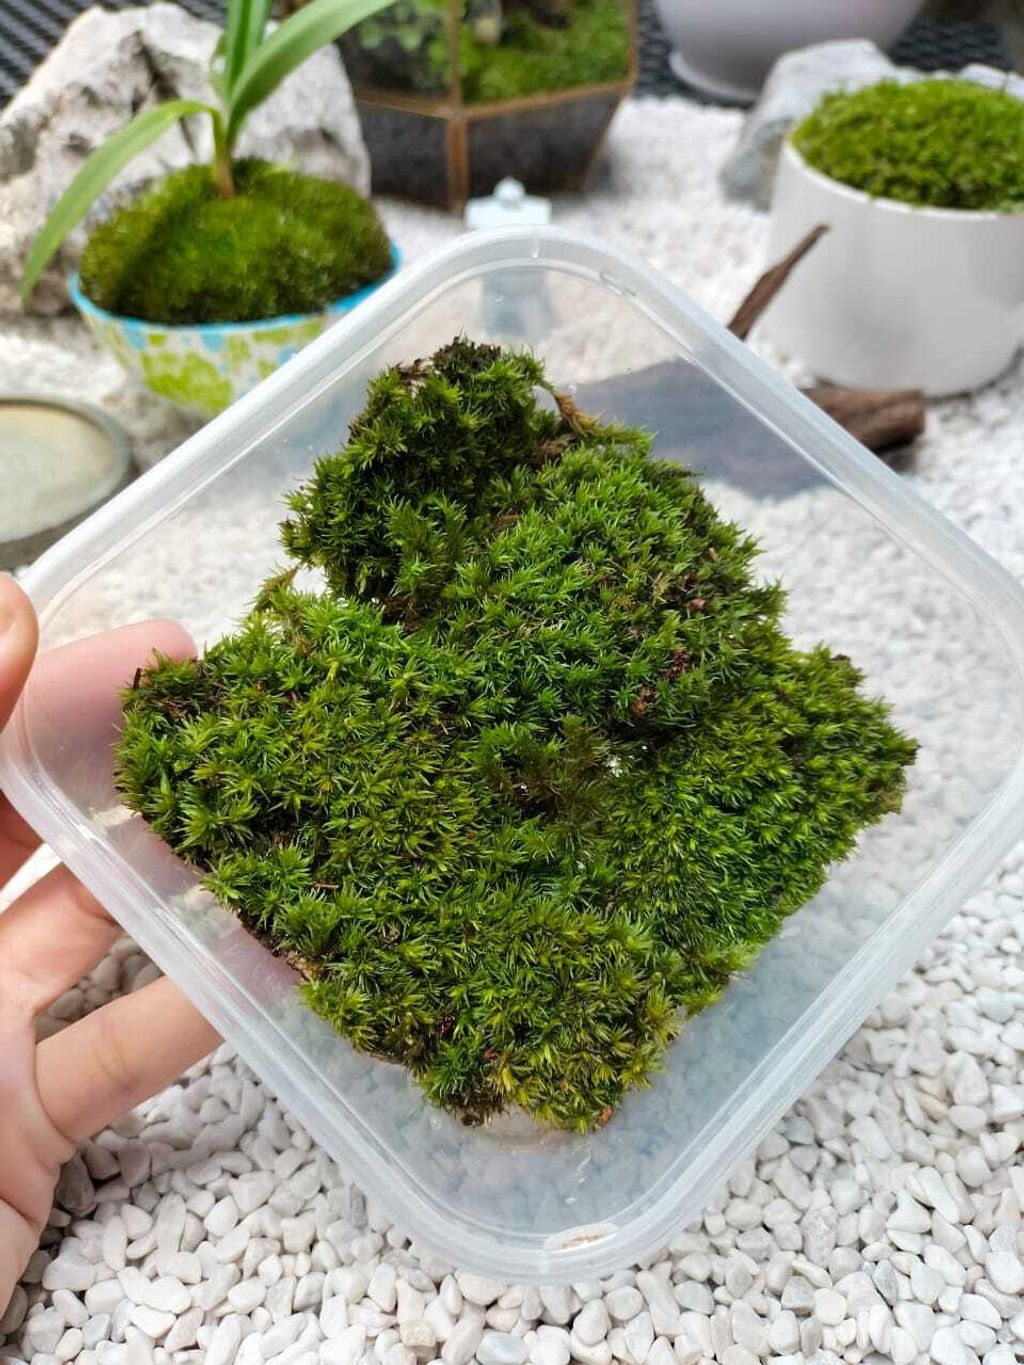 LushFloraMy - Terrarium moss/ Bun moss/ Live moss/ Lumut hidup